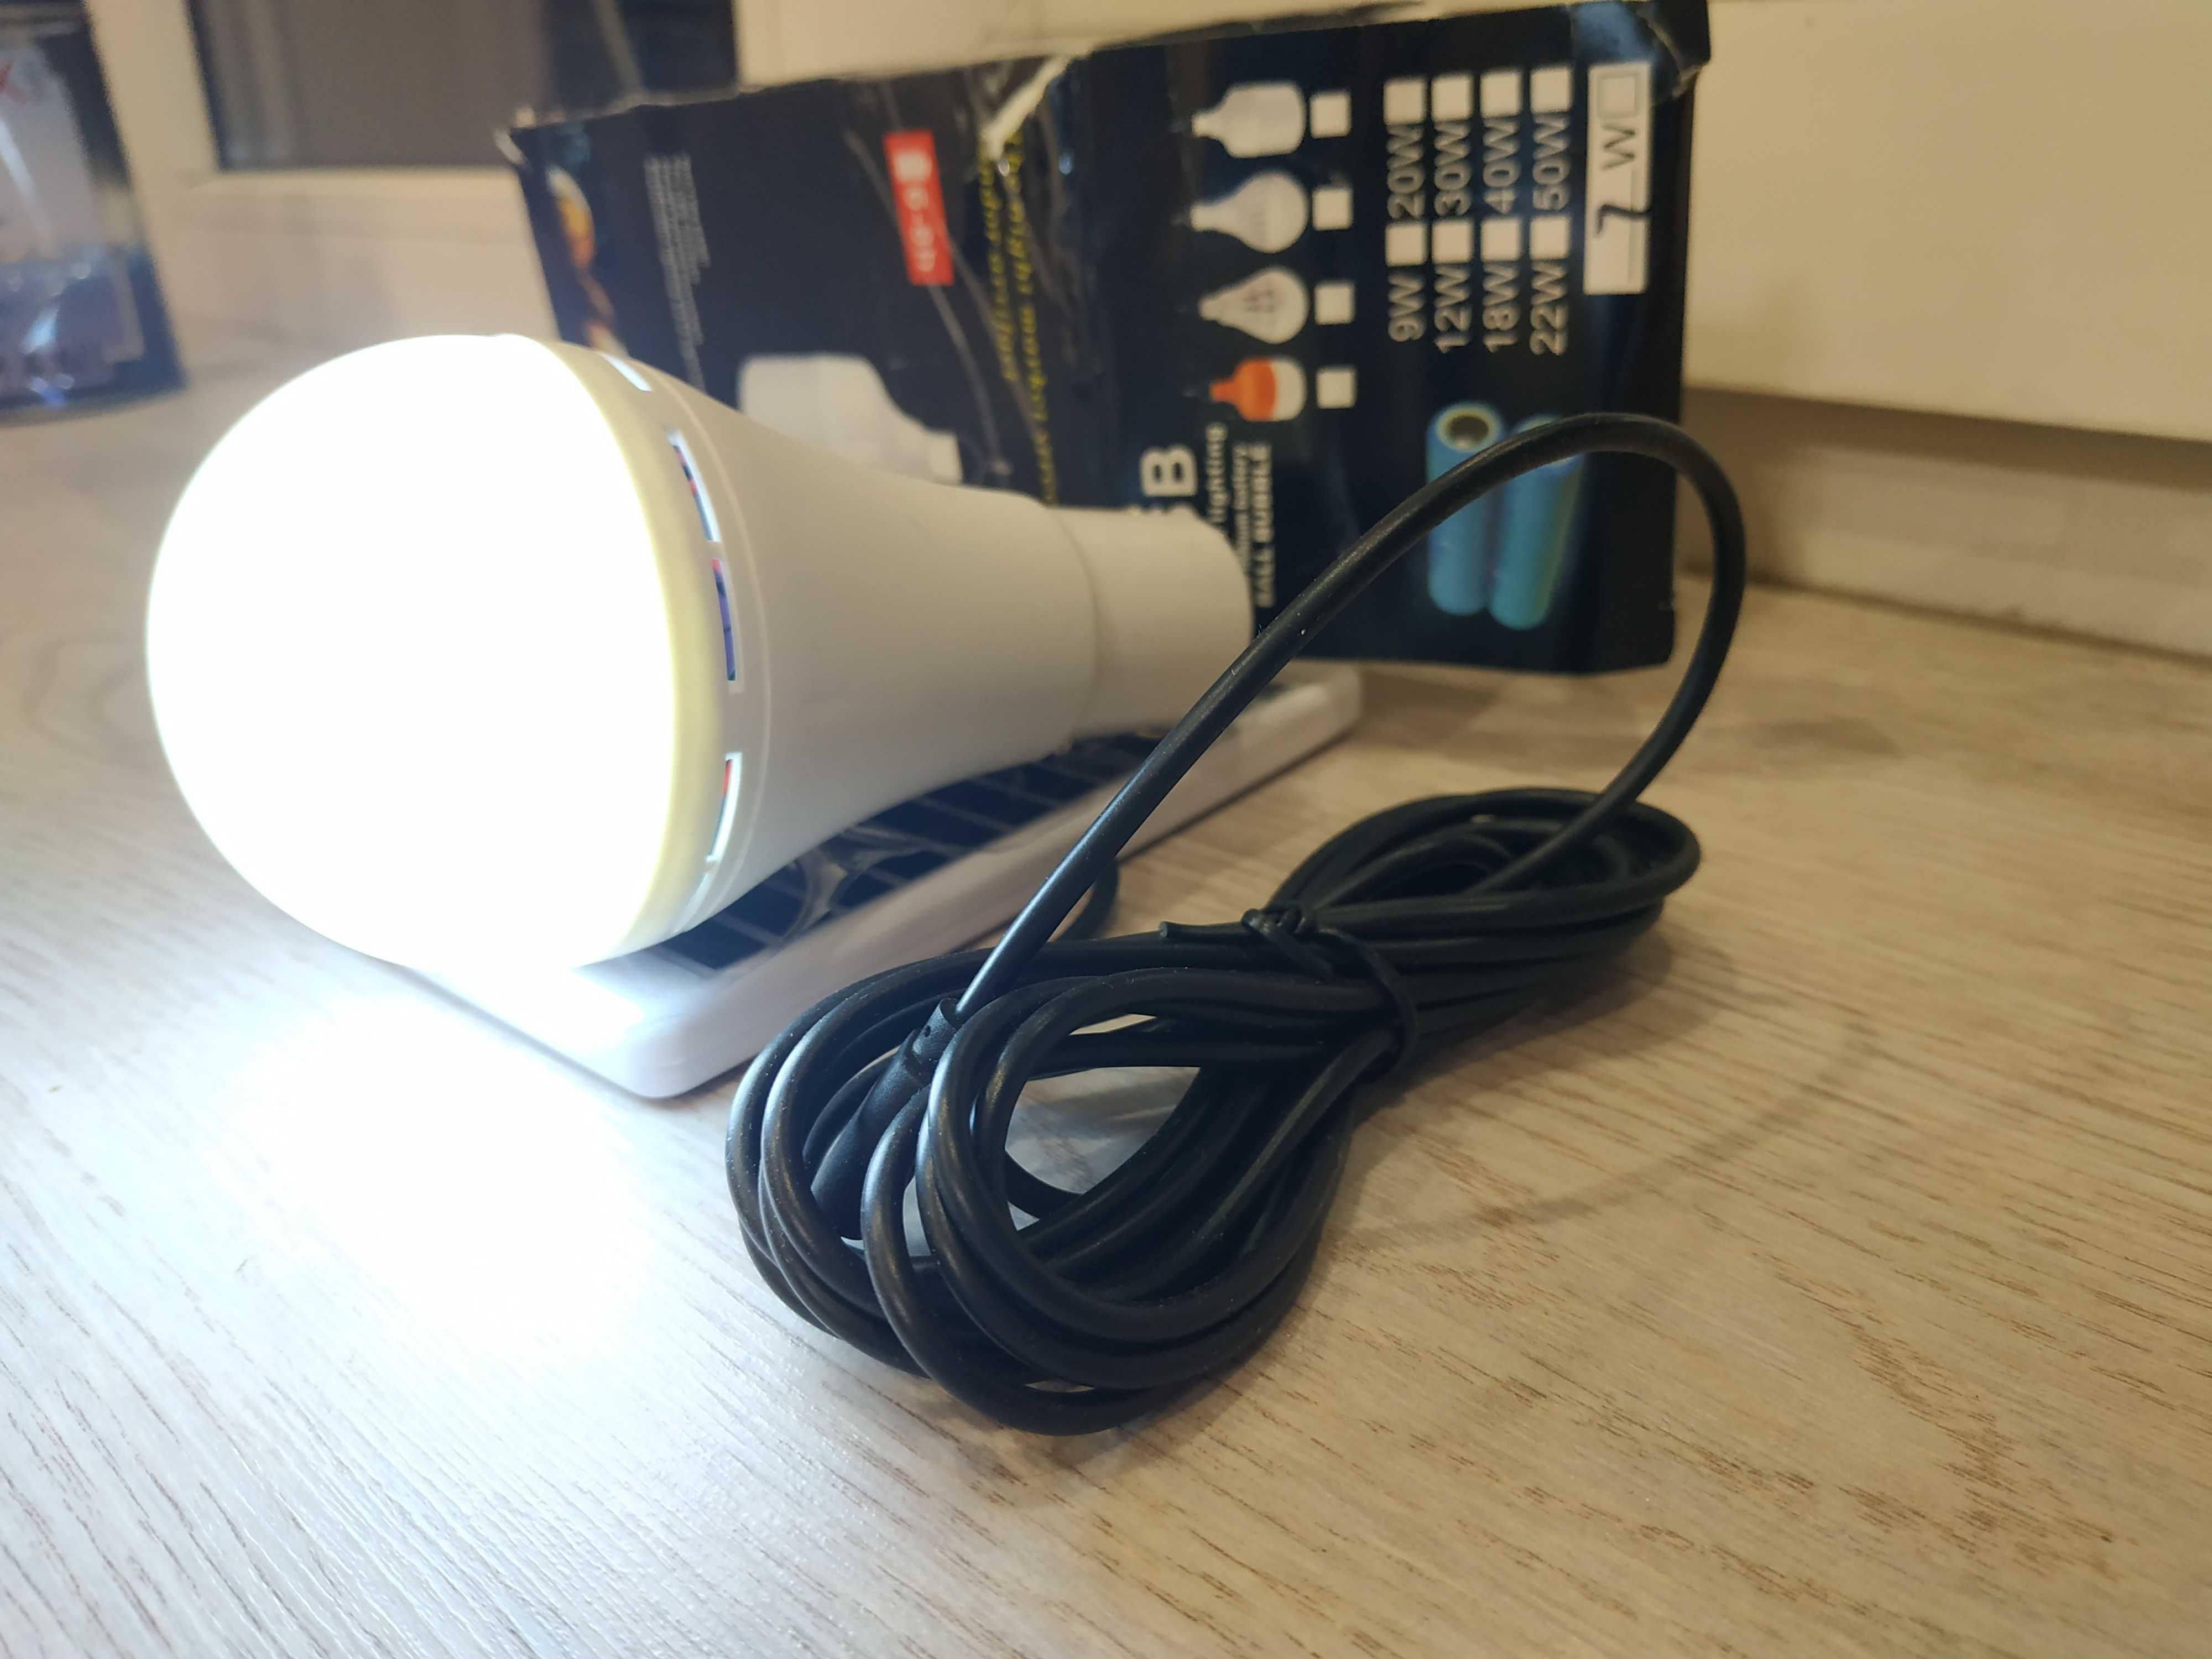 Лампа /зарядка от солнечной панели / на аккумуляторе / USB / НОВАЯ